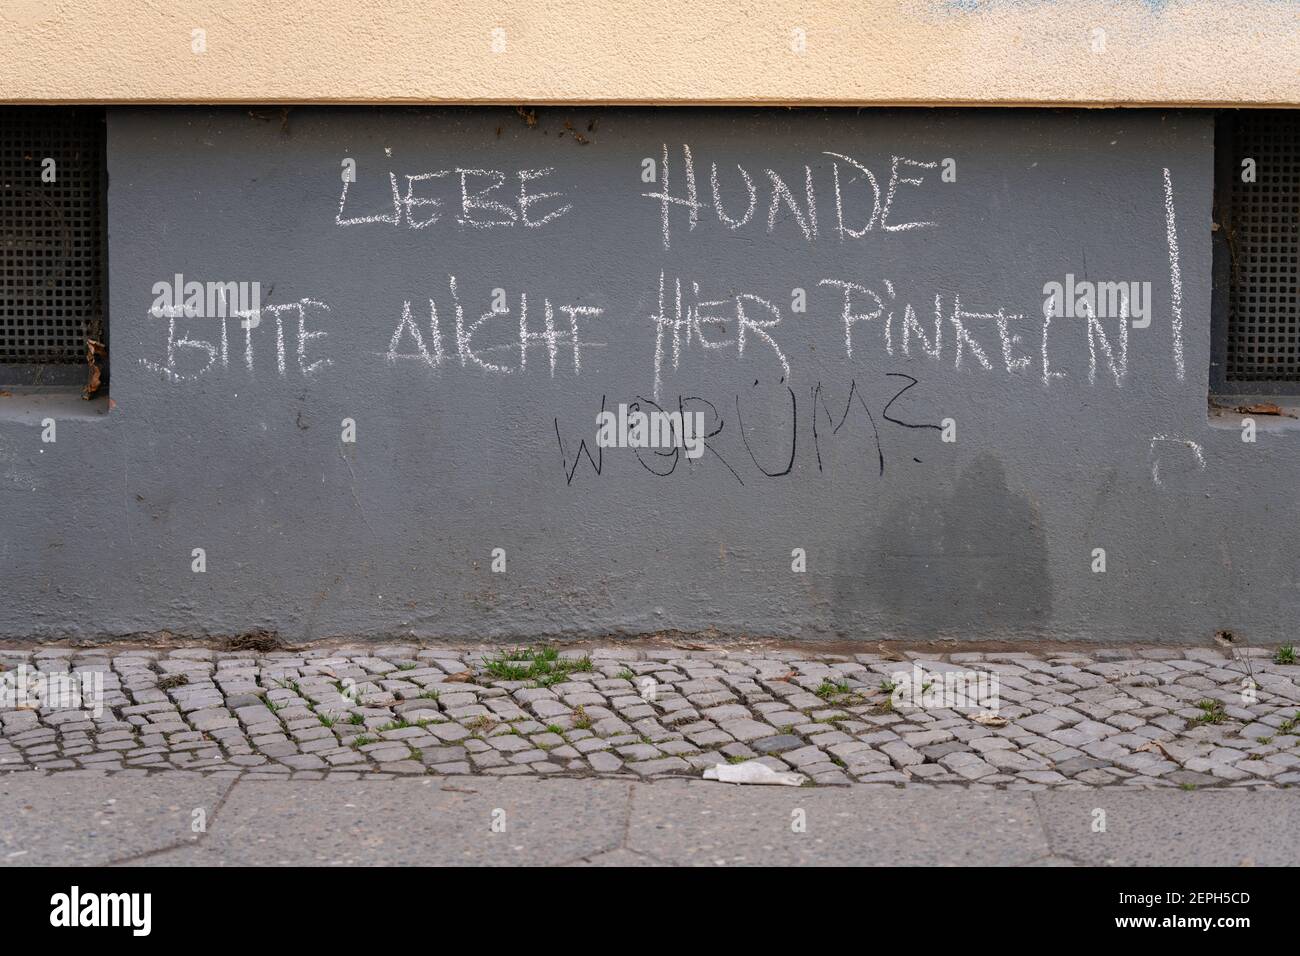 Liebe Hunde, bitte nicht hier pinkeln, Berlin Stock Photo